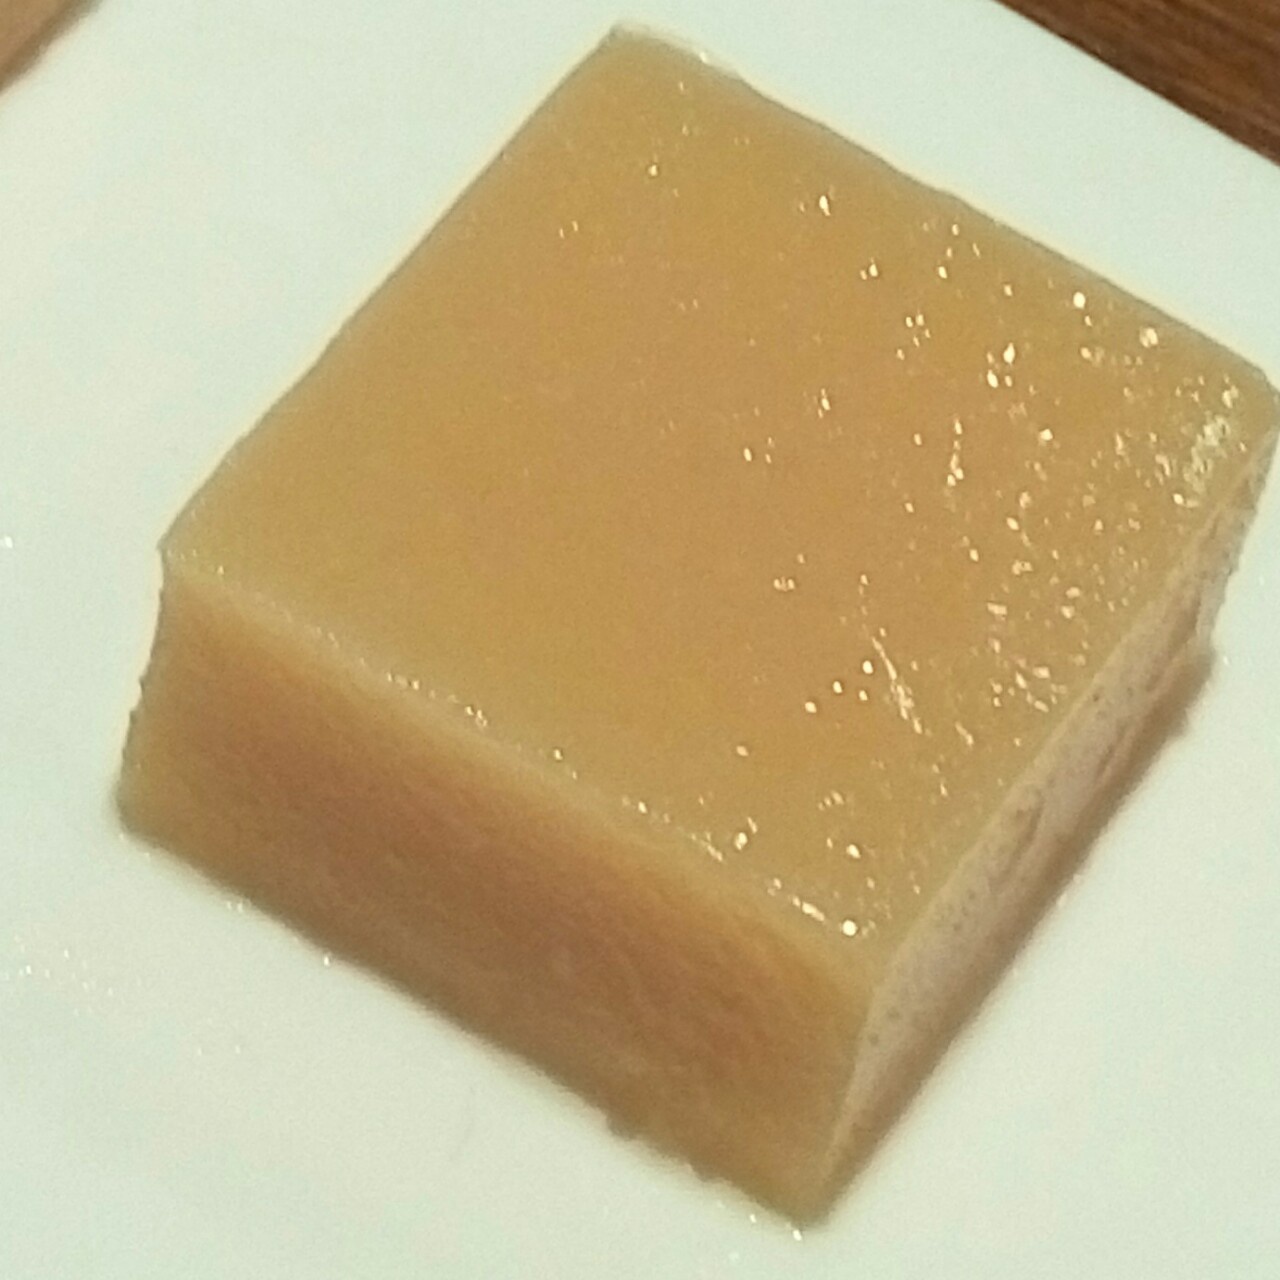 豌豆黄